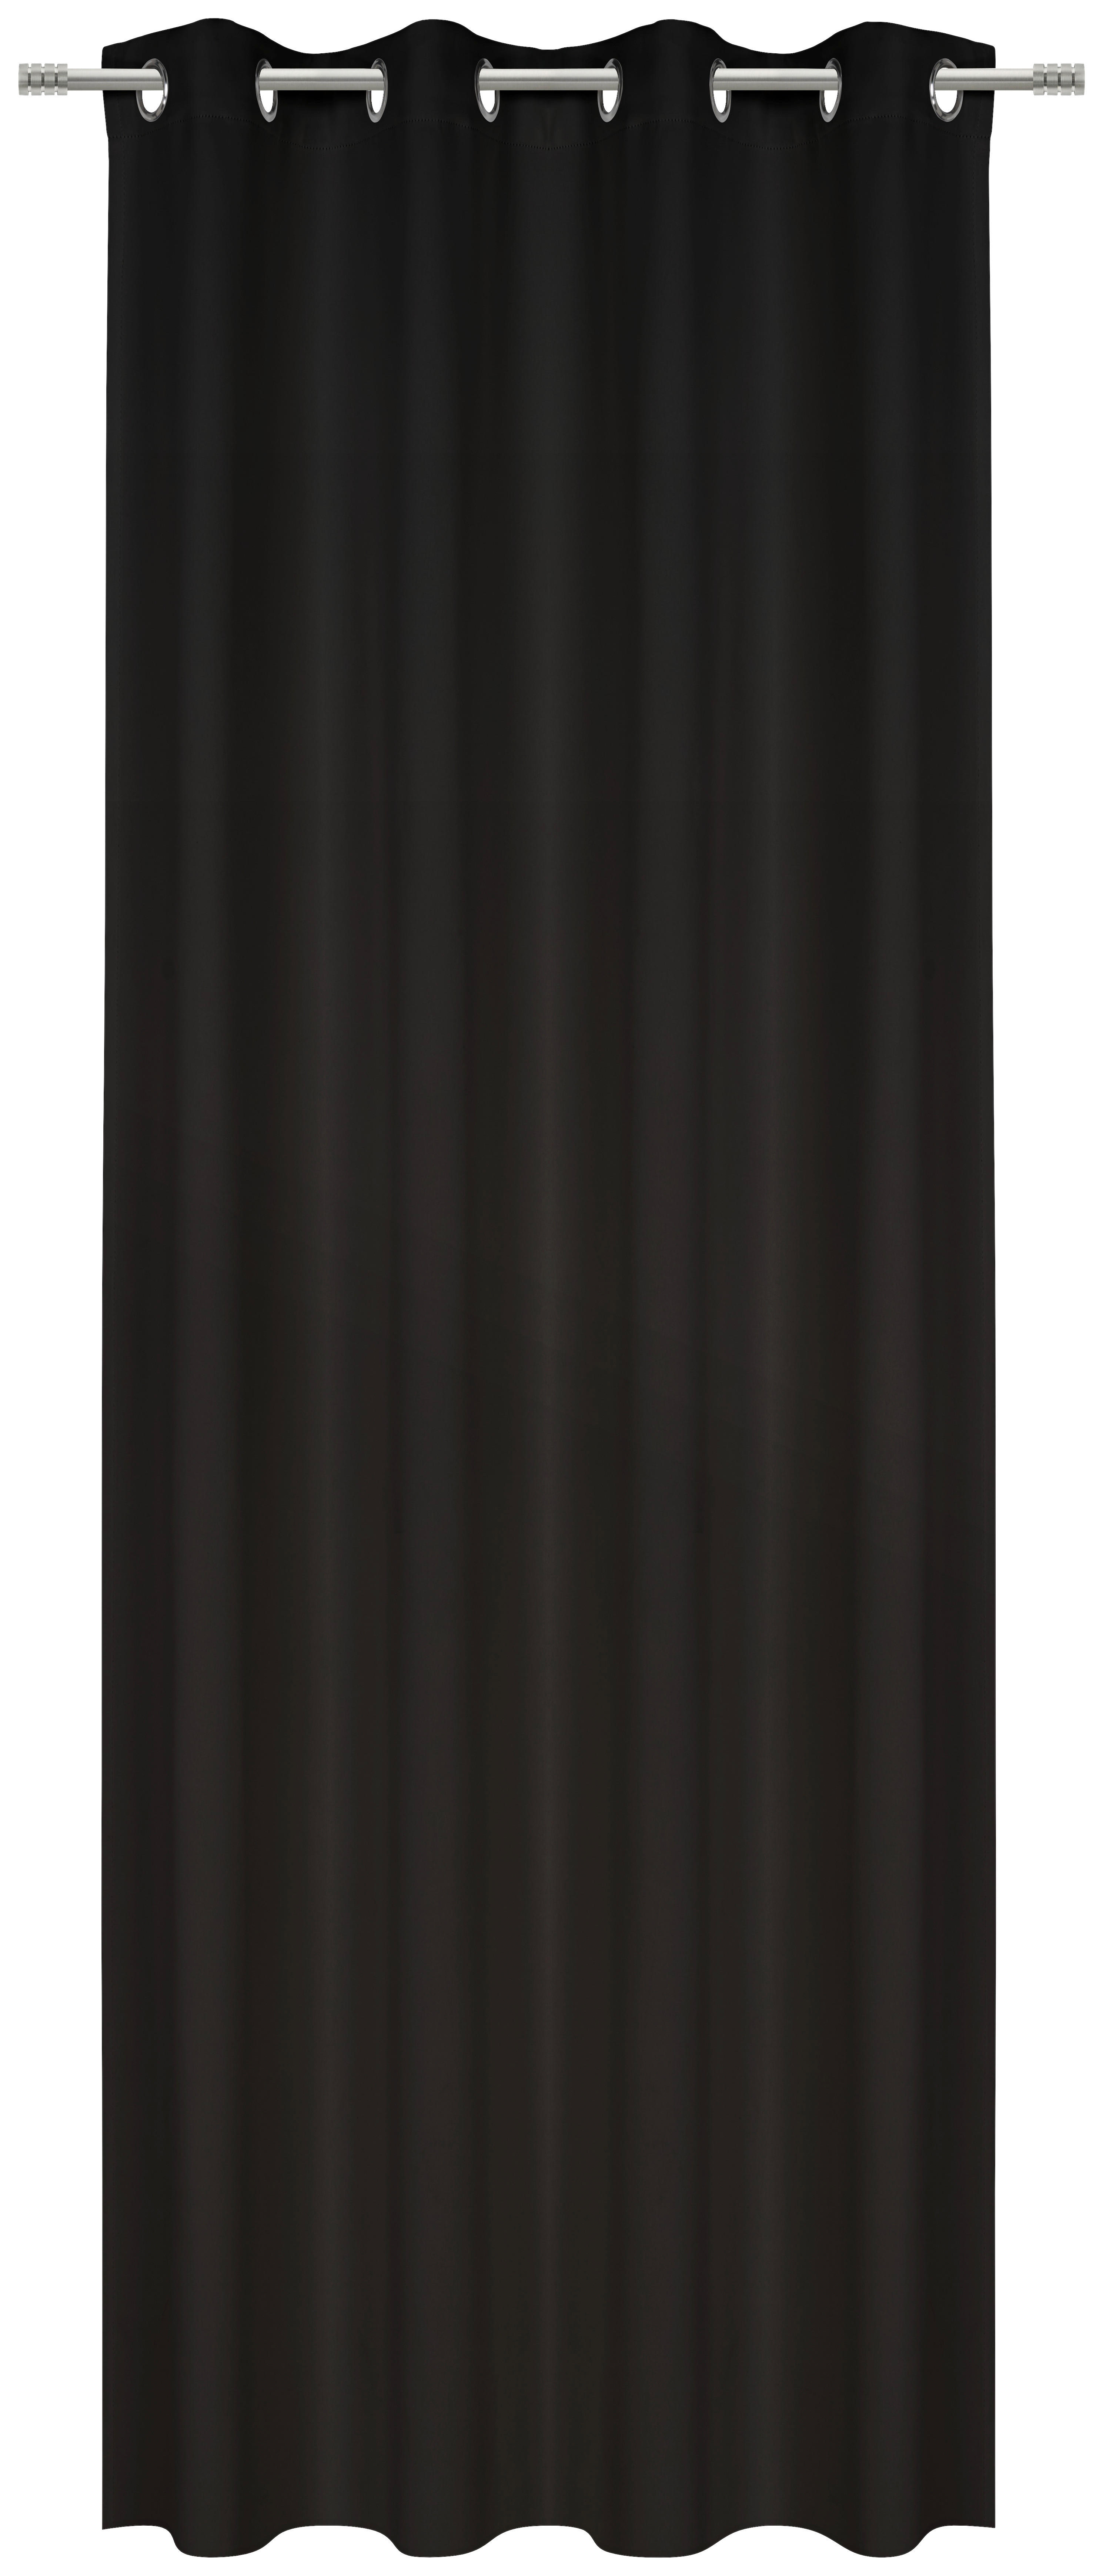 KÉSZFÜGGÖNY sötétítő  - fekete, Basics, textil (140/245cm) - Esposa